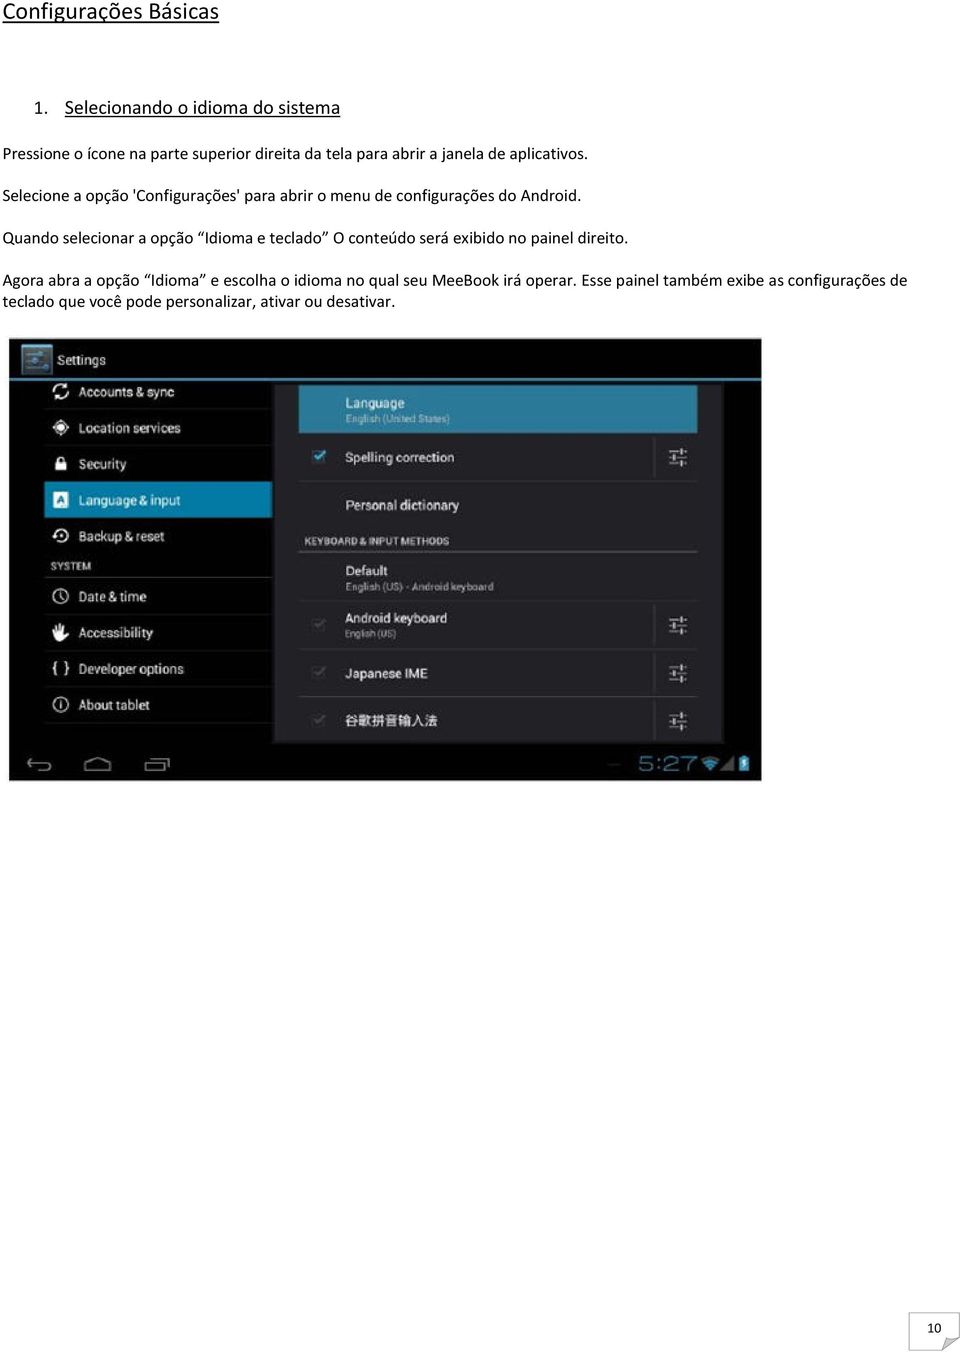 Selecione a opção 'Configurações' para abrir o menu de configurações do Android.